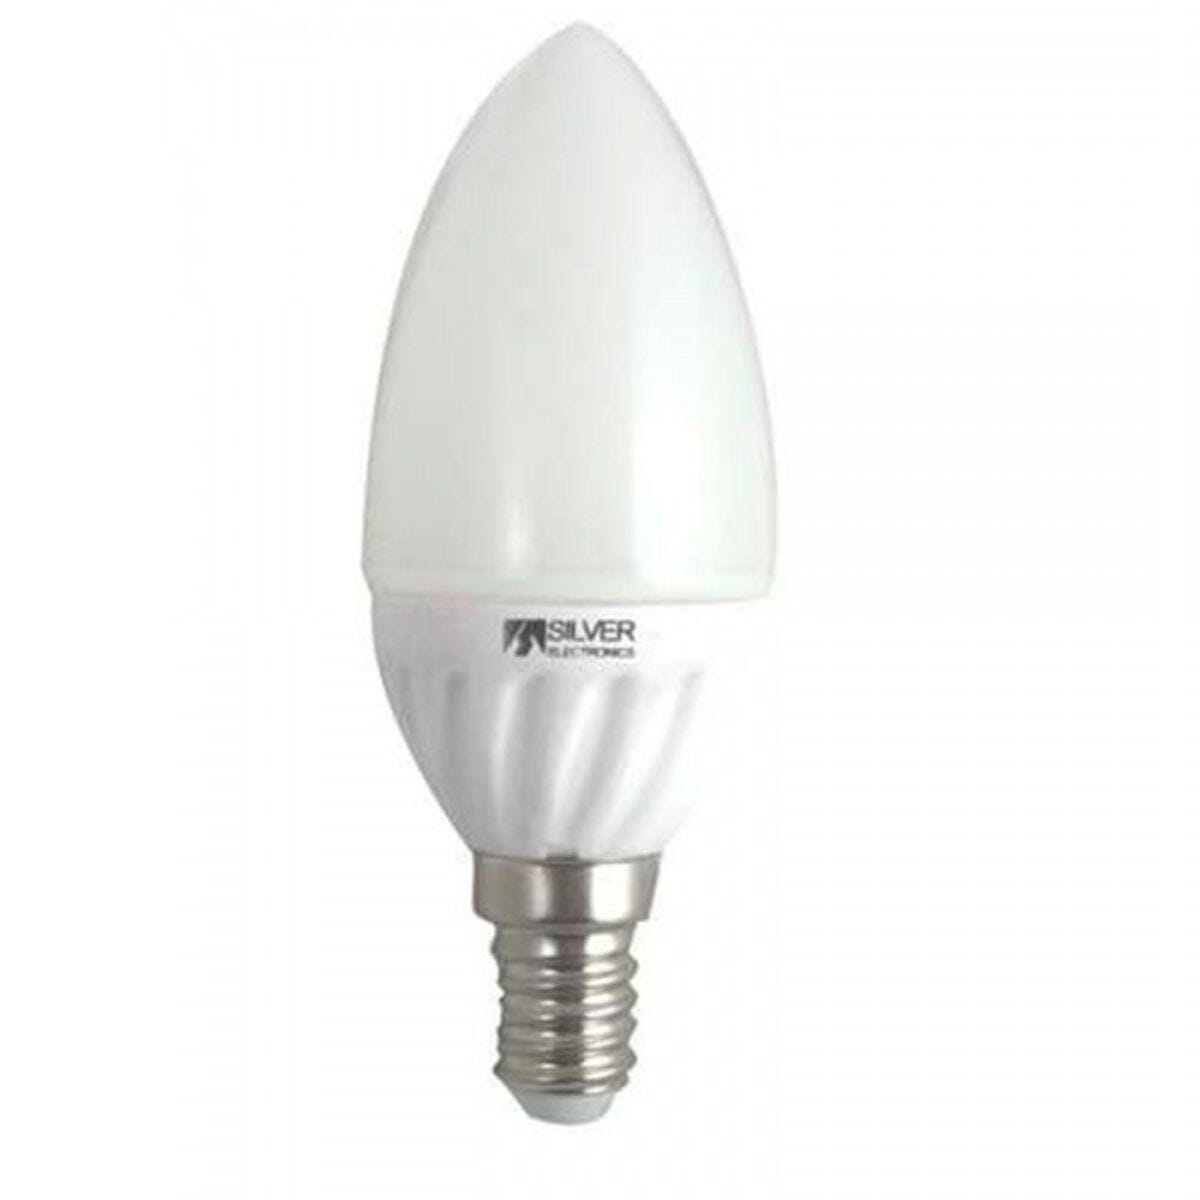 Ampoule led E14 470lm 6W blanc neutre - XANLITE - Mr.Bricolage